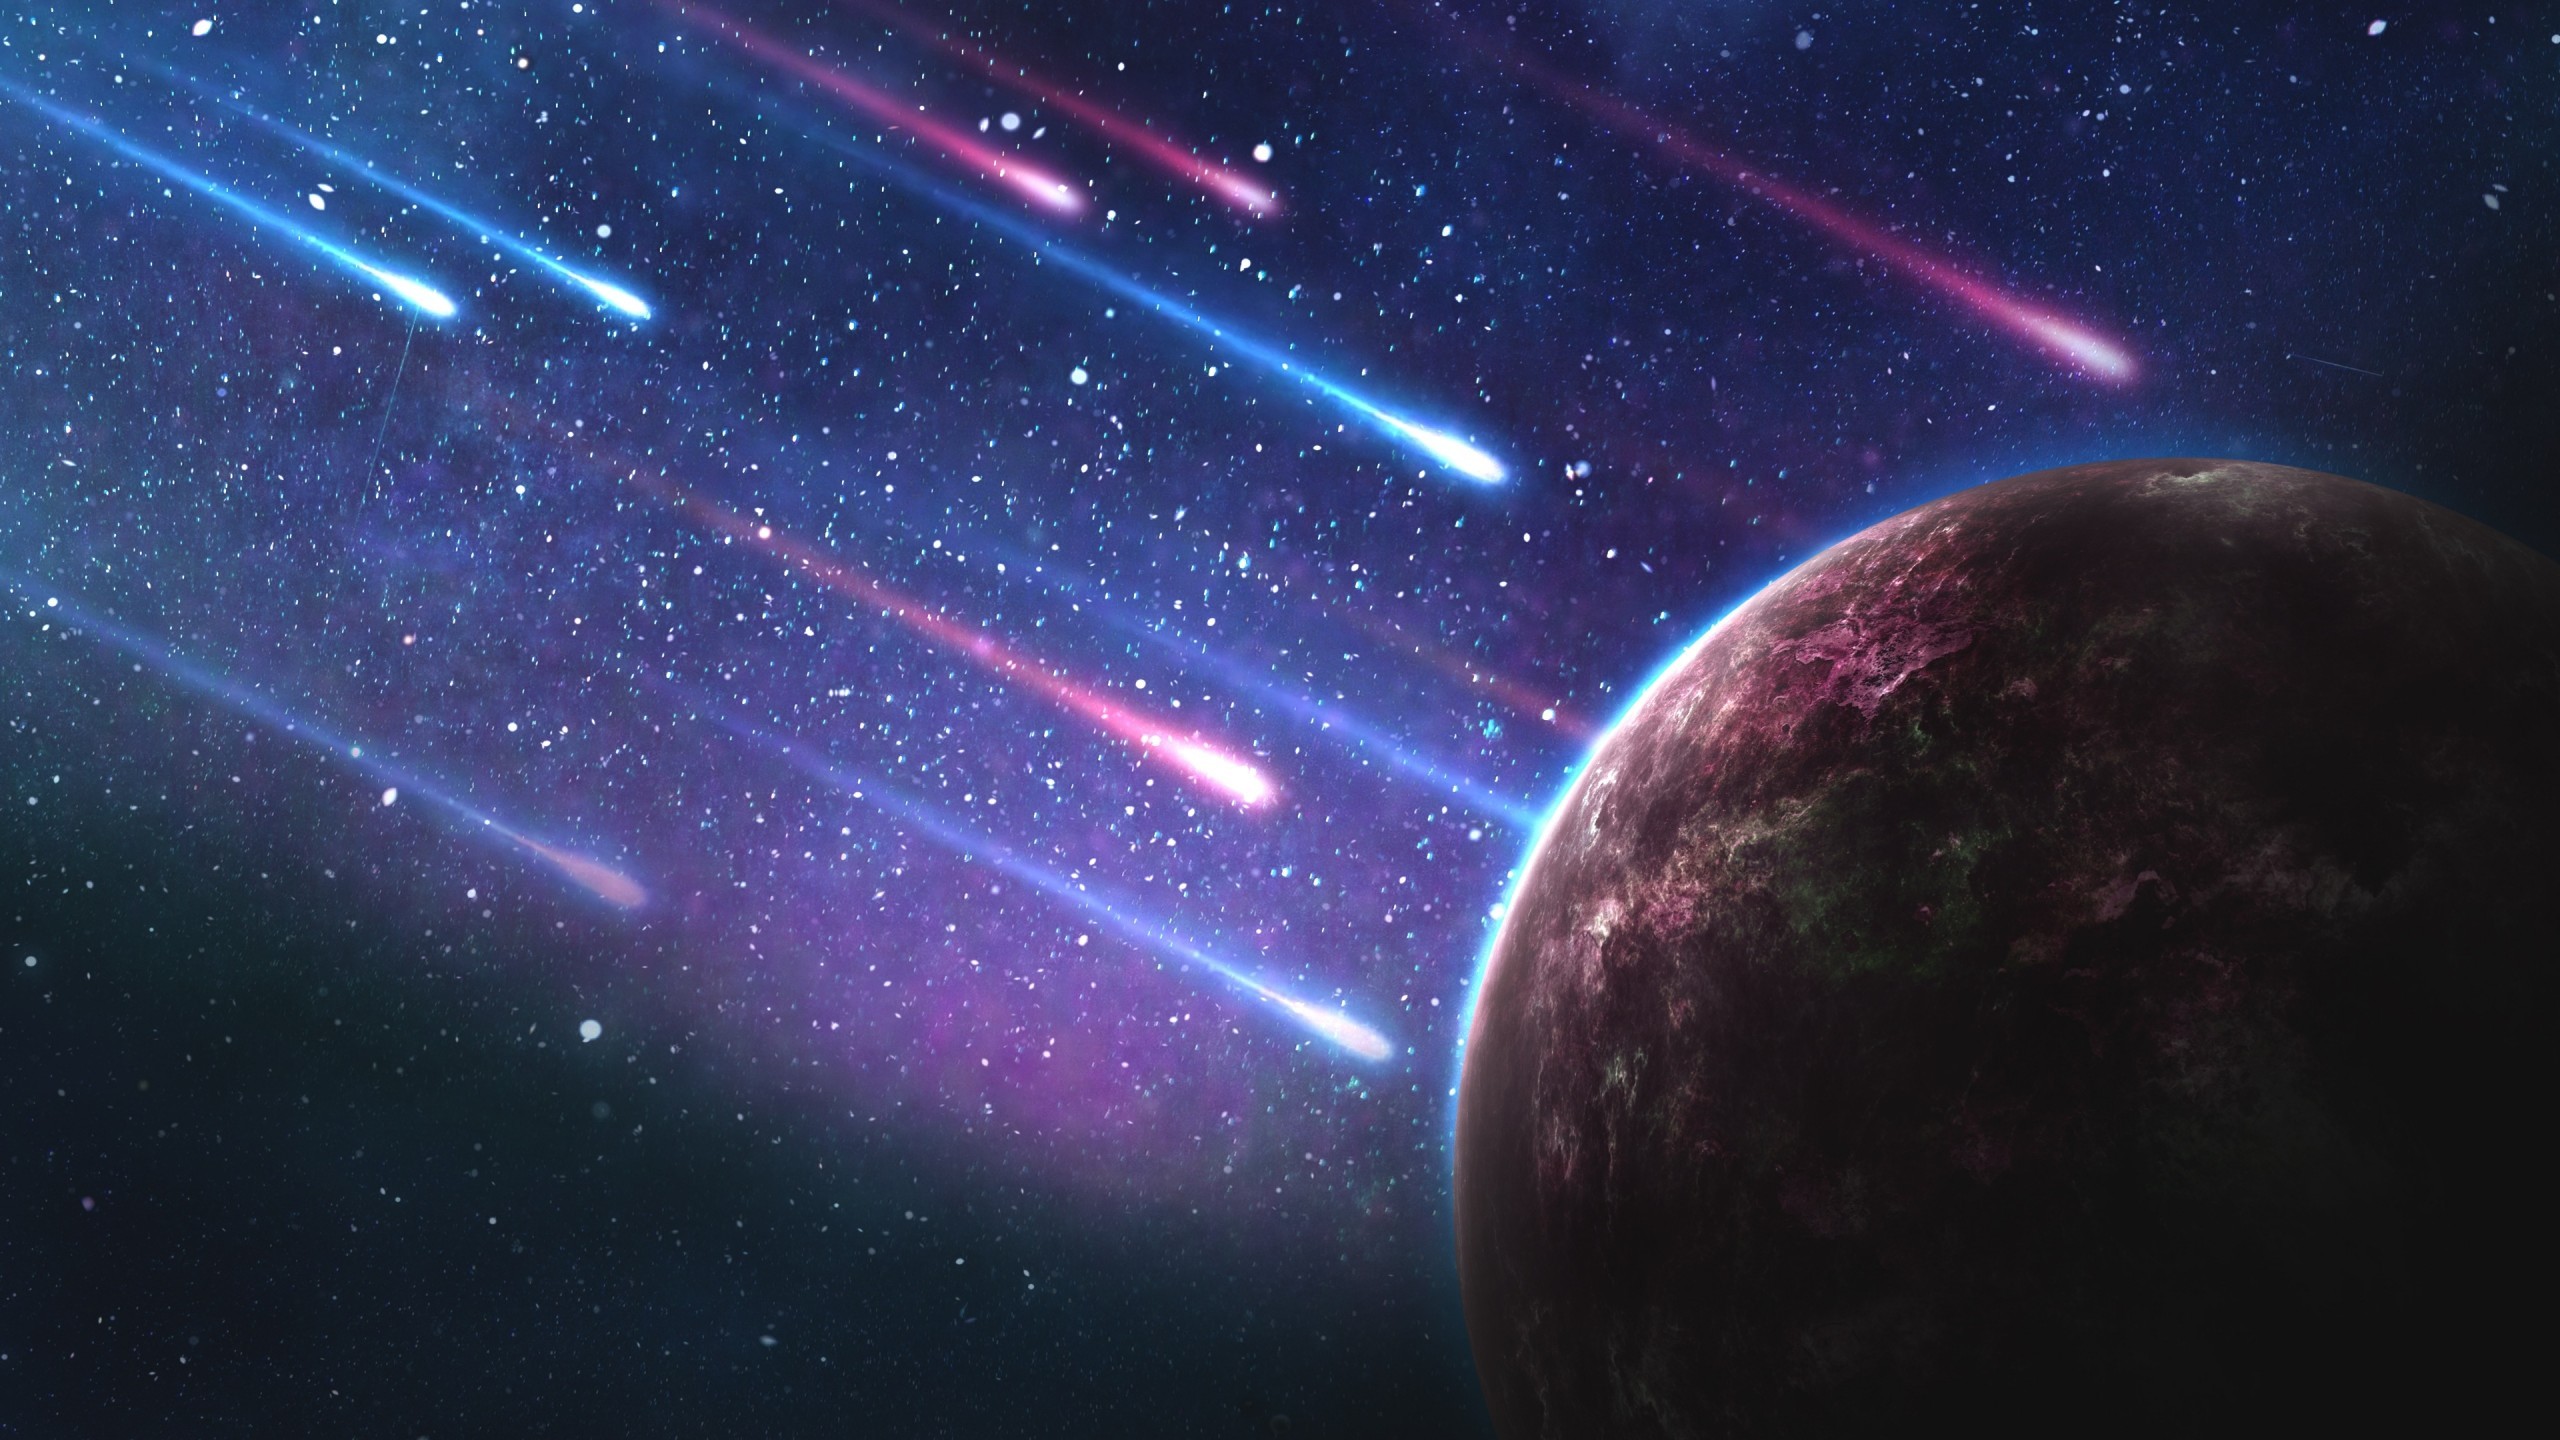 Meteorites, Planet, Stars, Galaxy - Galaxy Wallpaper 4k - HD Wallpaper 